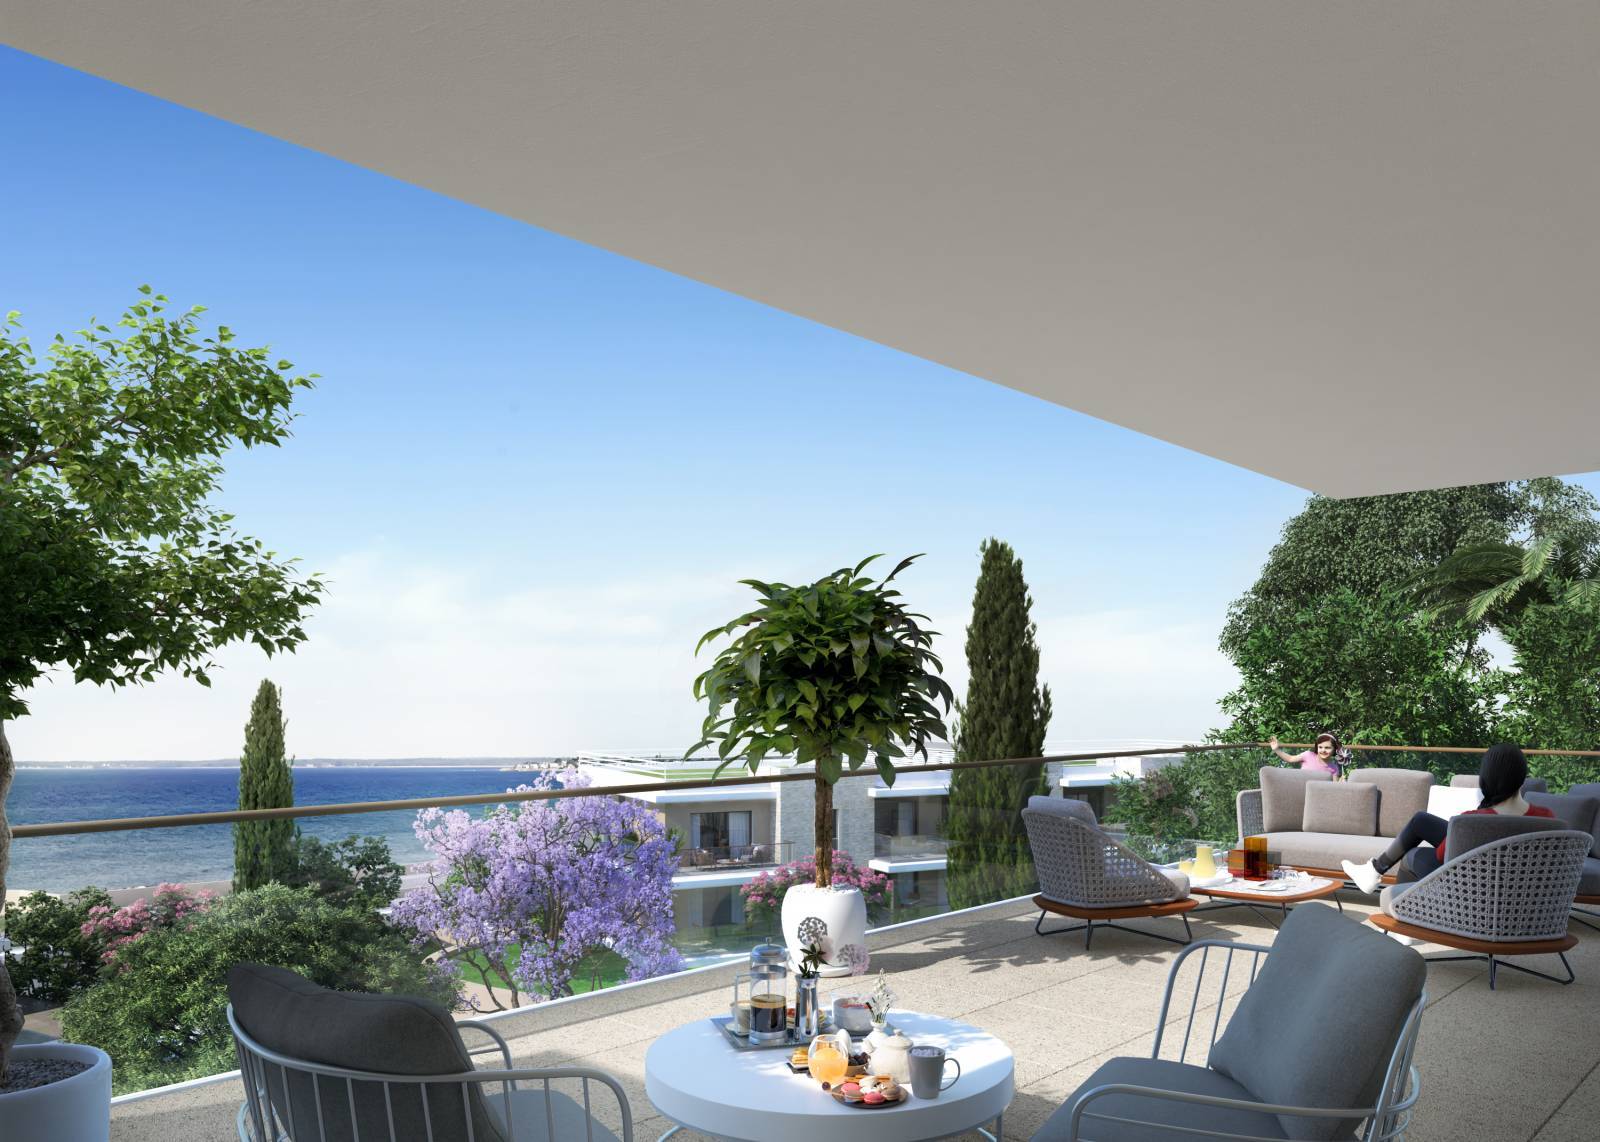 Spacieux 3 pièces de 90m² - Large terrasse vue mer - Prestations haut de gamme (3 pièces, 90 m²)